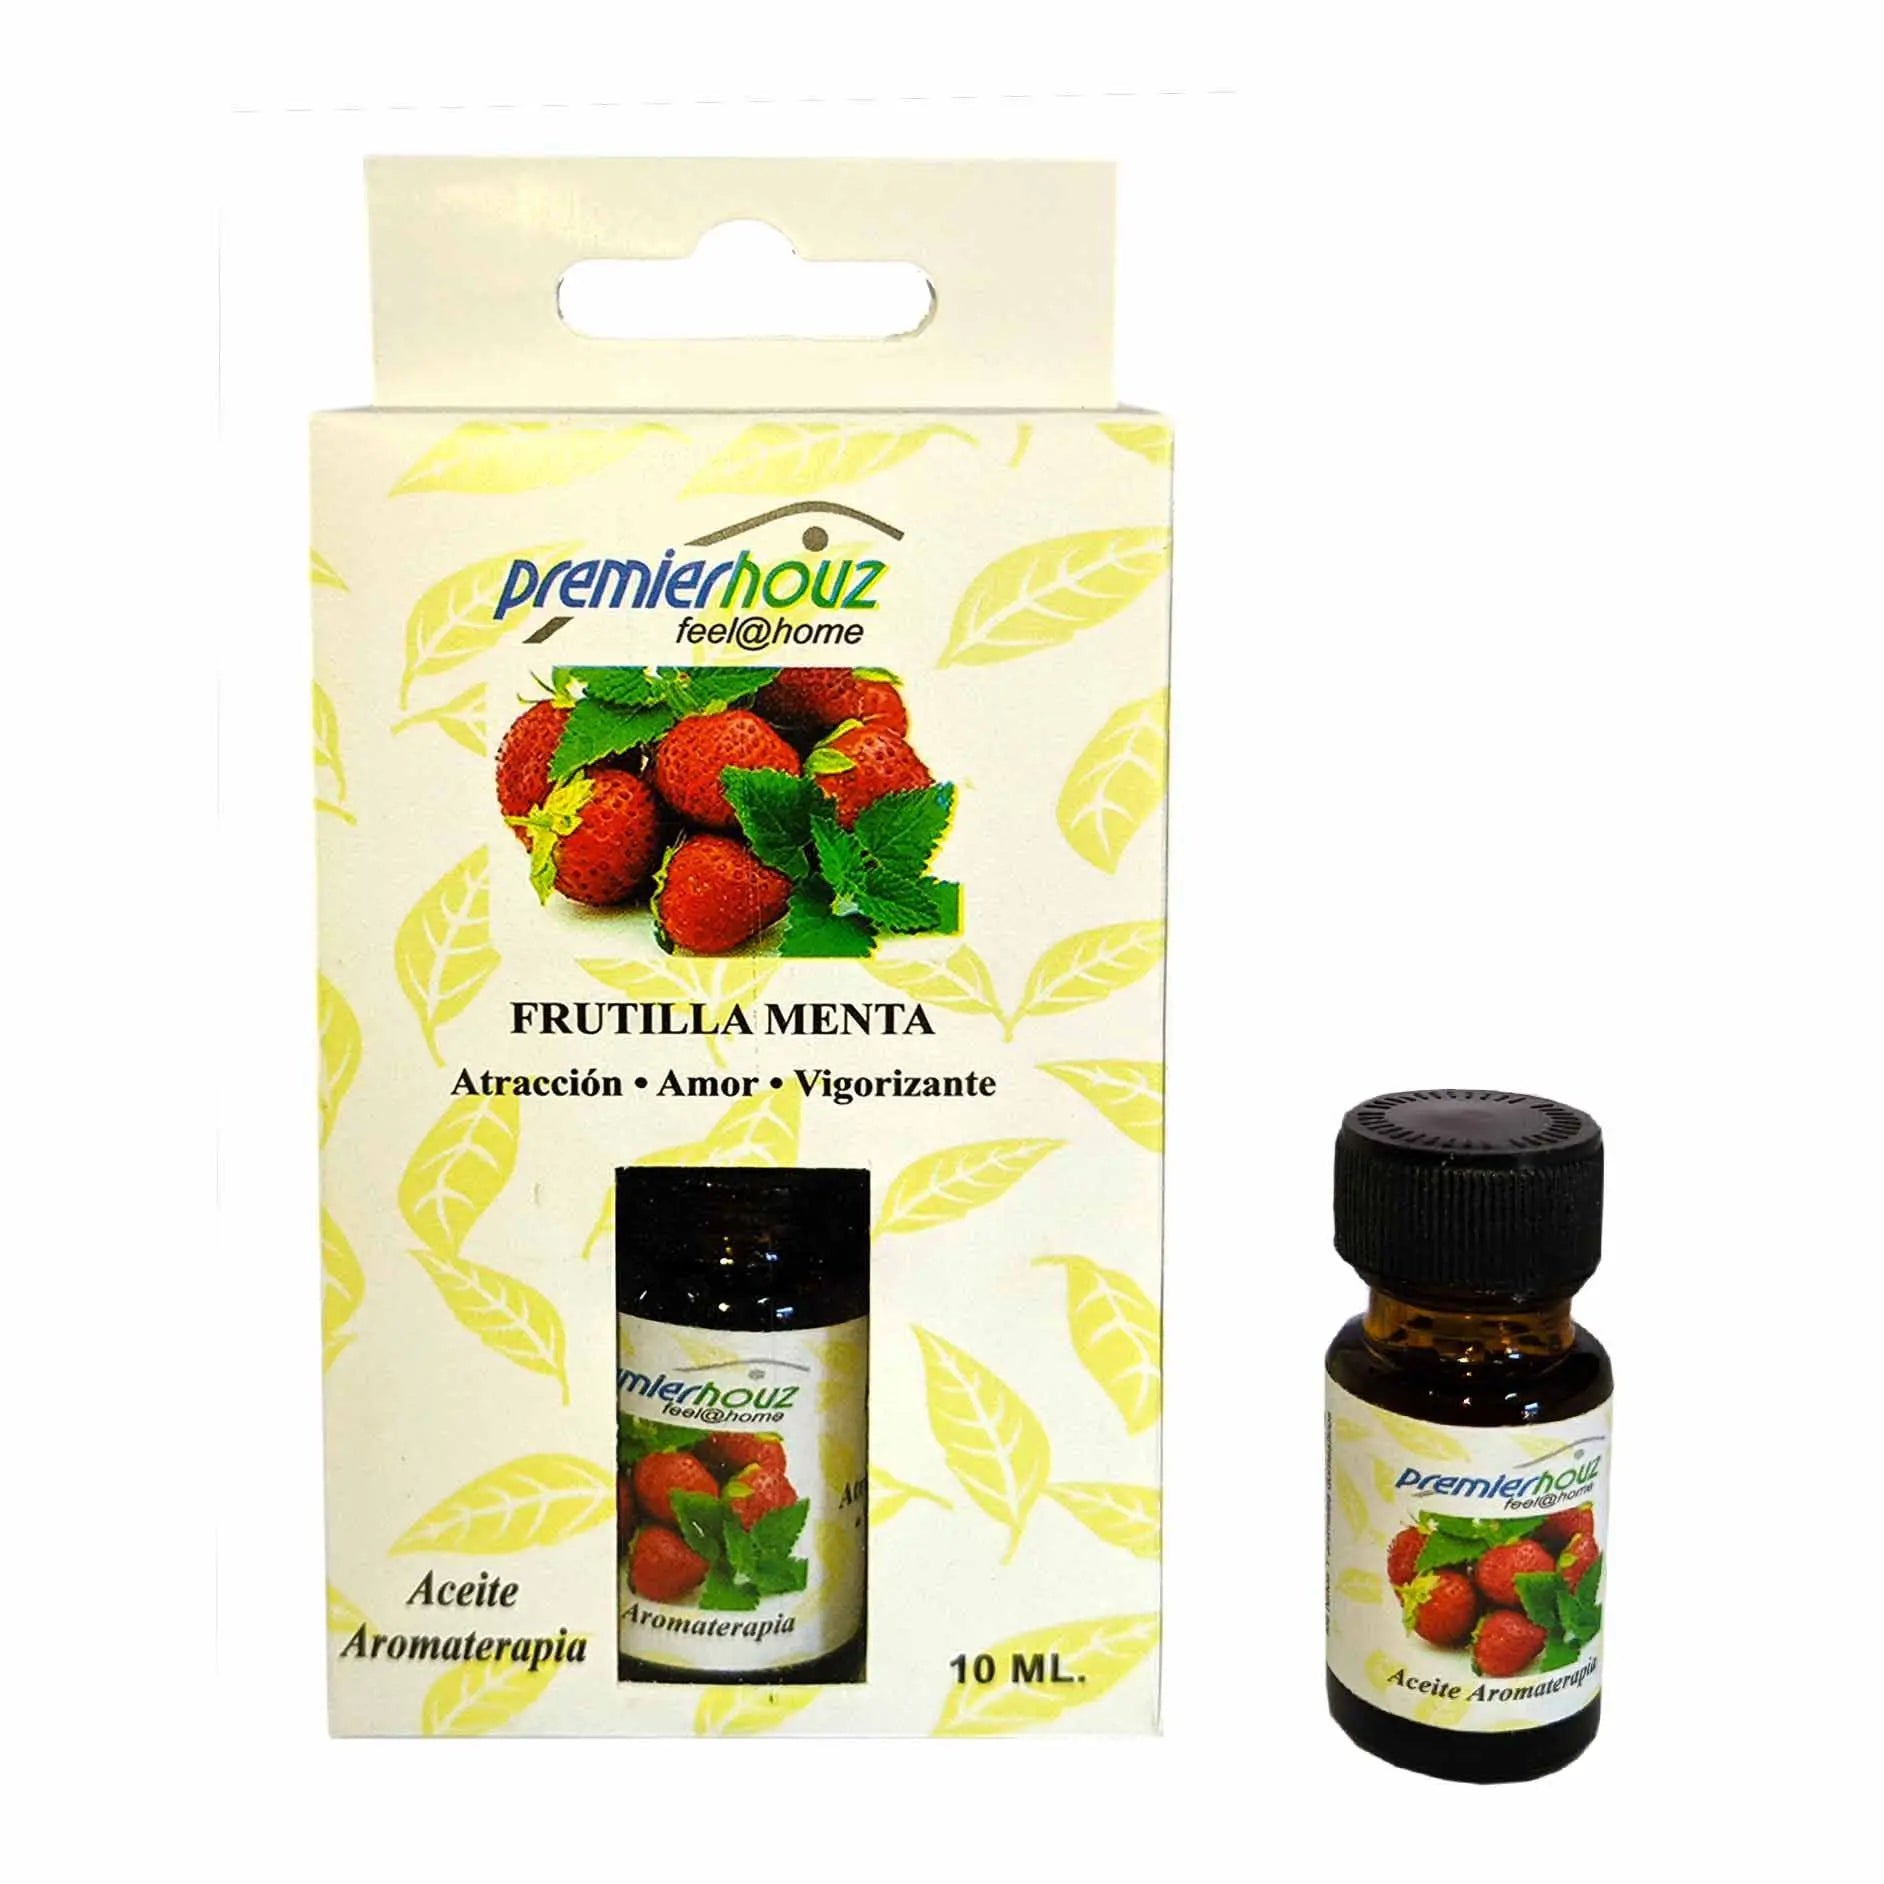 Aceite aromaterapia 10 ml. para difusores Premierhouz